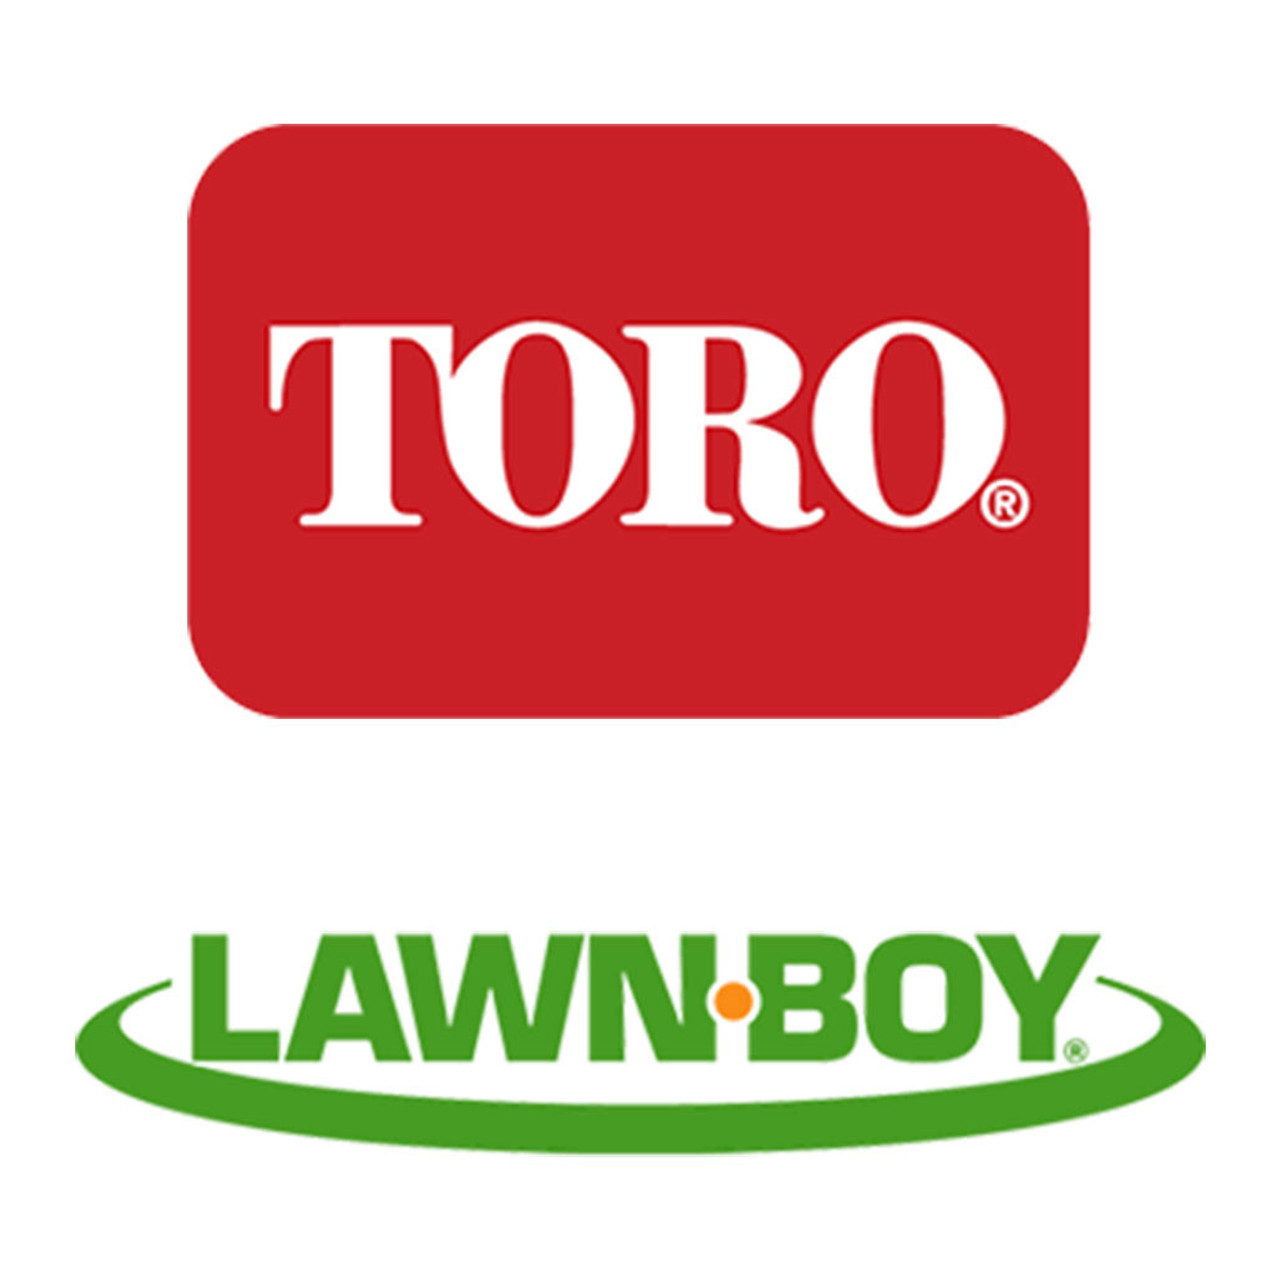 Toro Lawn-Boy 133-5585P Scraper Replacement Kit Pc21